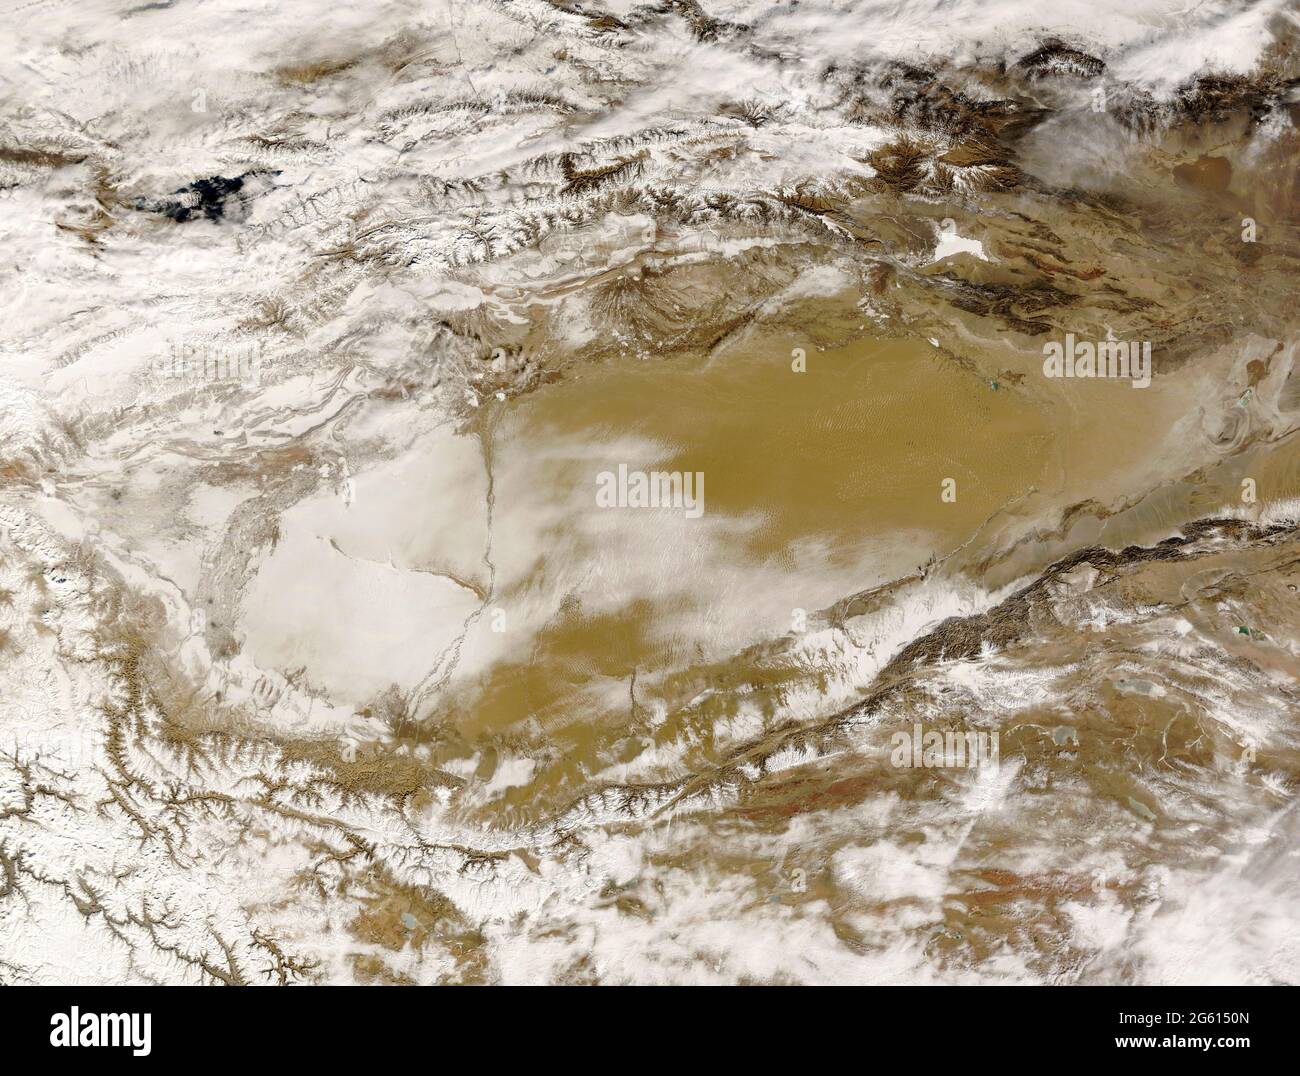 DESERTO DI TAKLAMAKAN, ASIA CENTRALE - Maggio 2008 - Vista invernale satellite del deserto di Taklamakan in Asia Centrale - Foto: Geopix/NASA Foto Stock